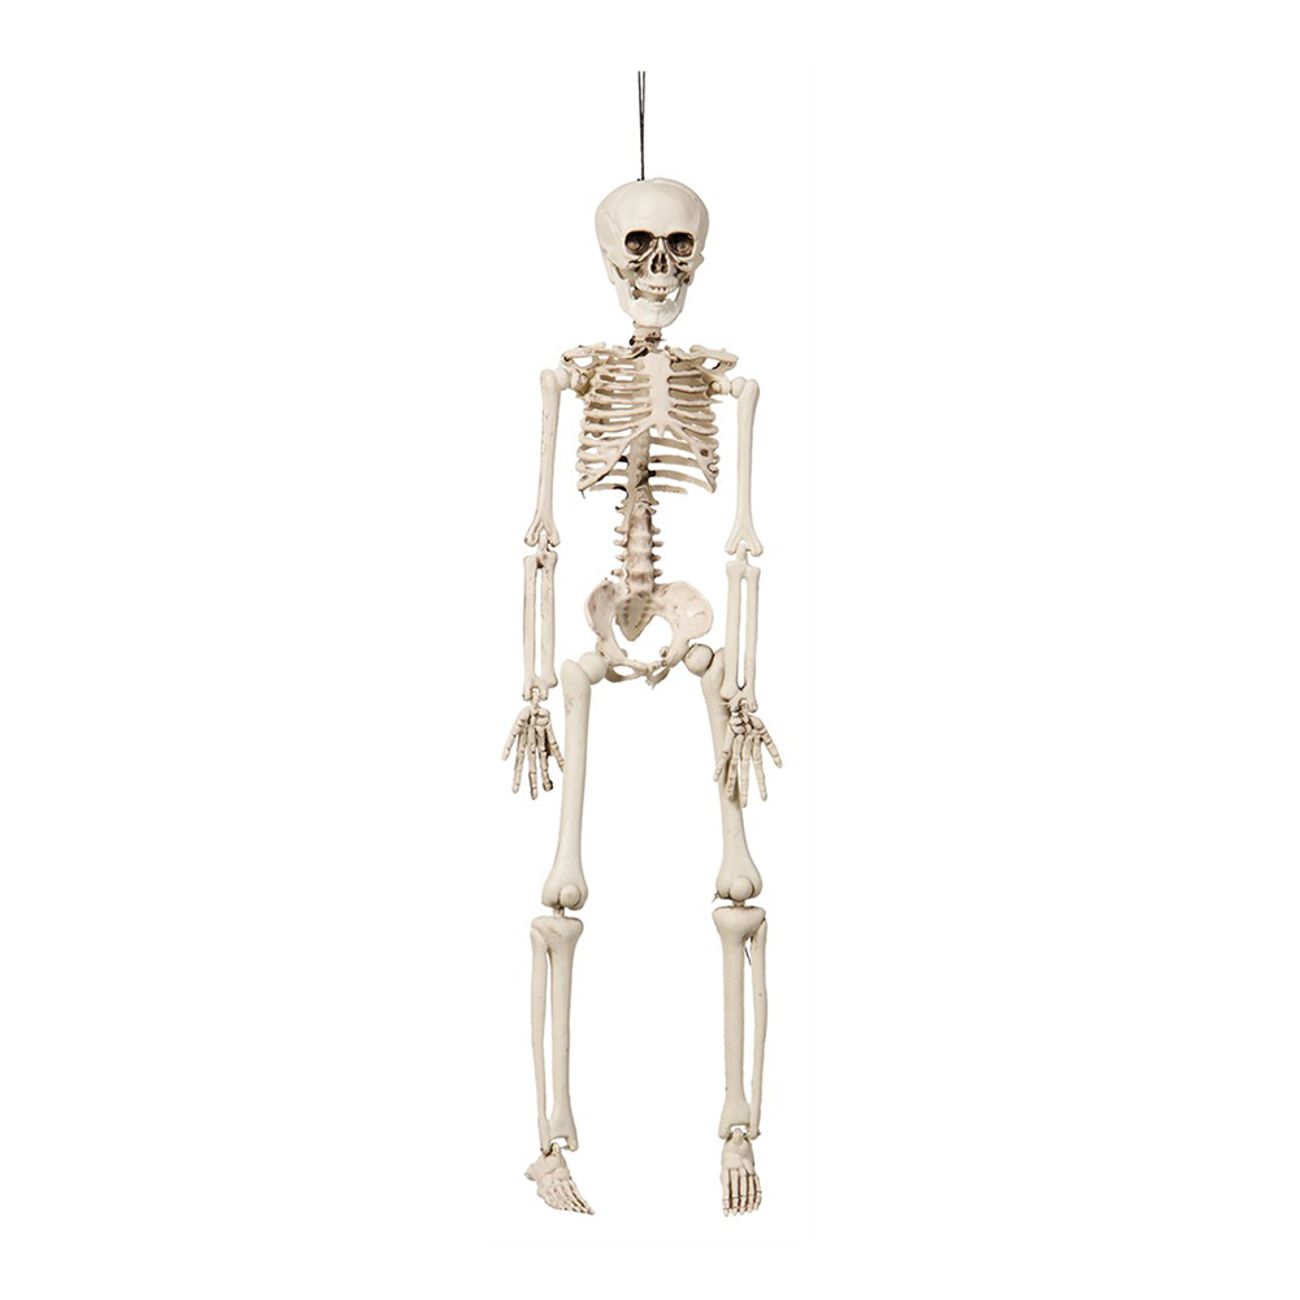 hangande-rorligt-skelett-prop-78543-1